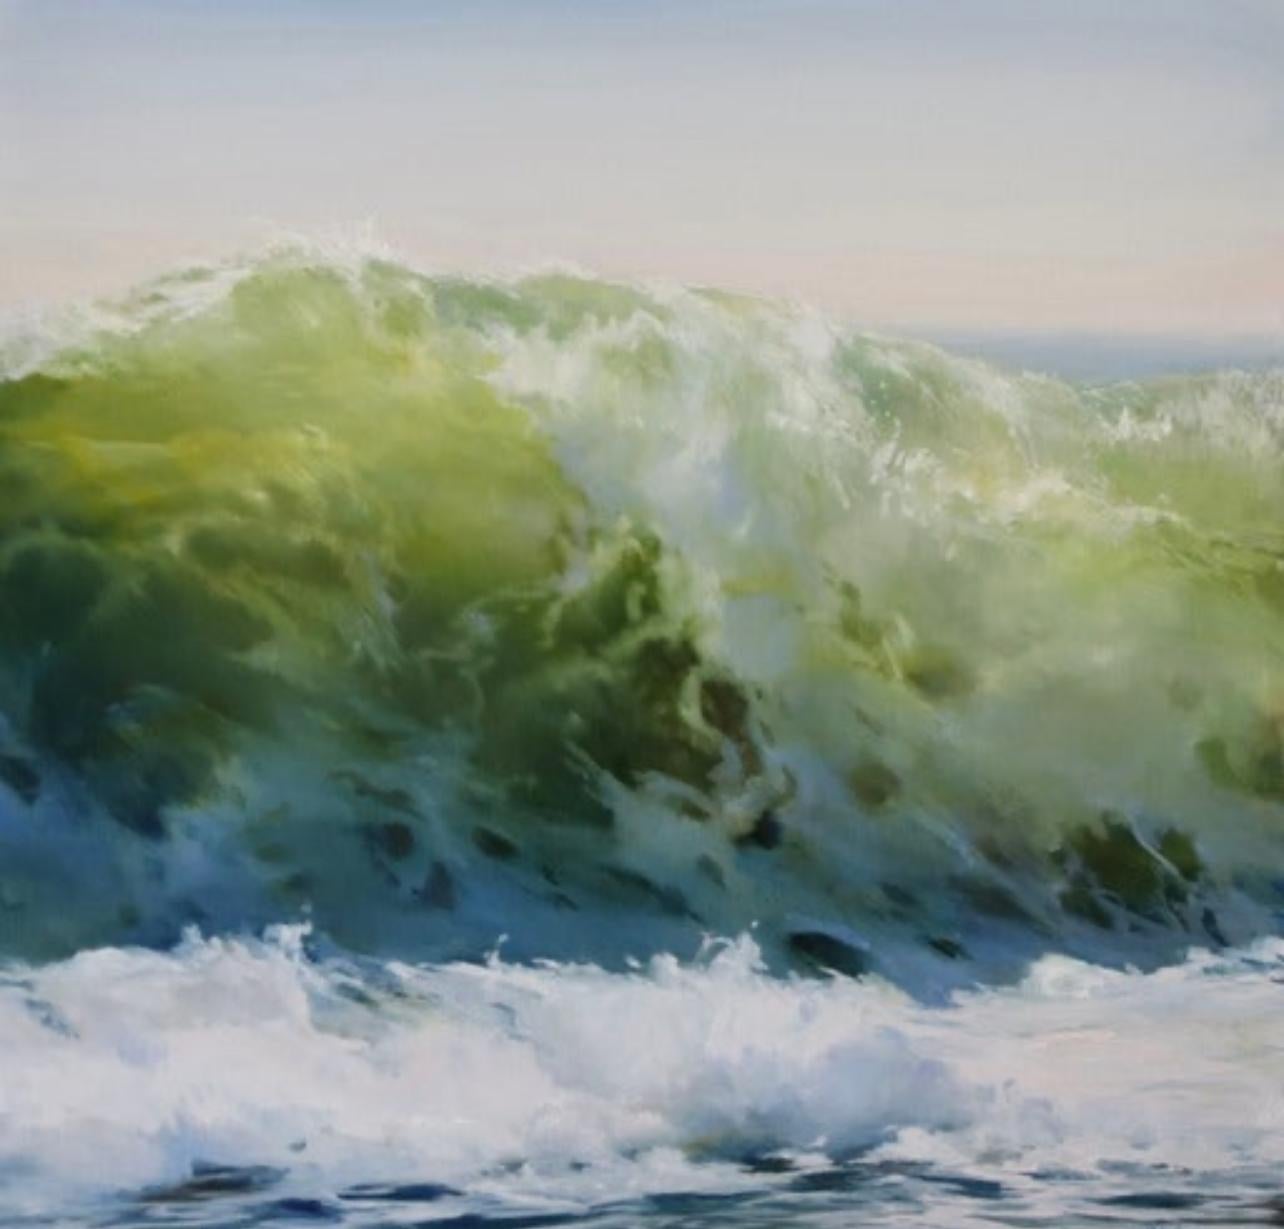 Janine Robertson Landscape Painting – Resolute, ein Gemälde in Öl auf Aluminium, das eine starke Welle in Grüntönen darstellt 